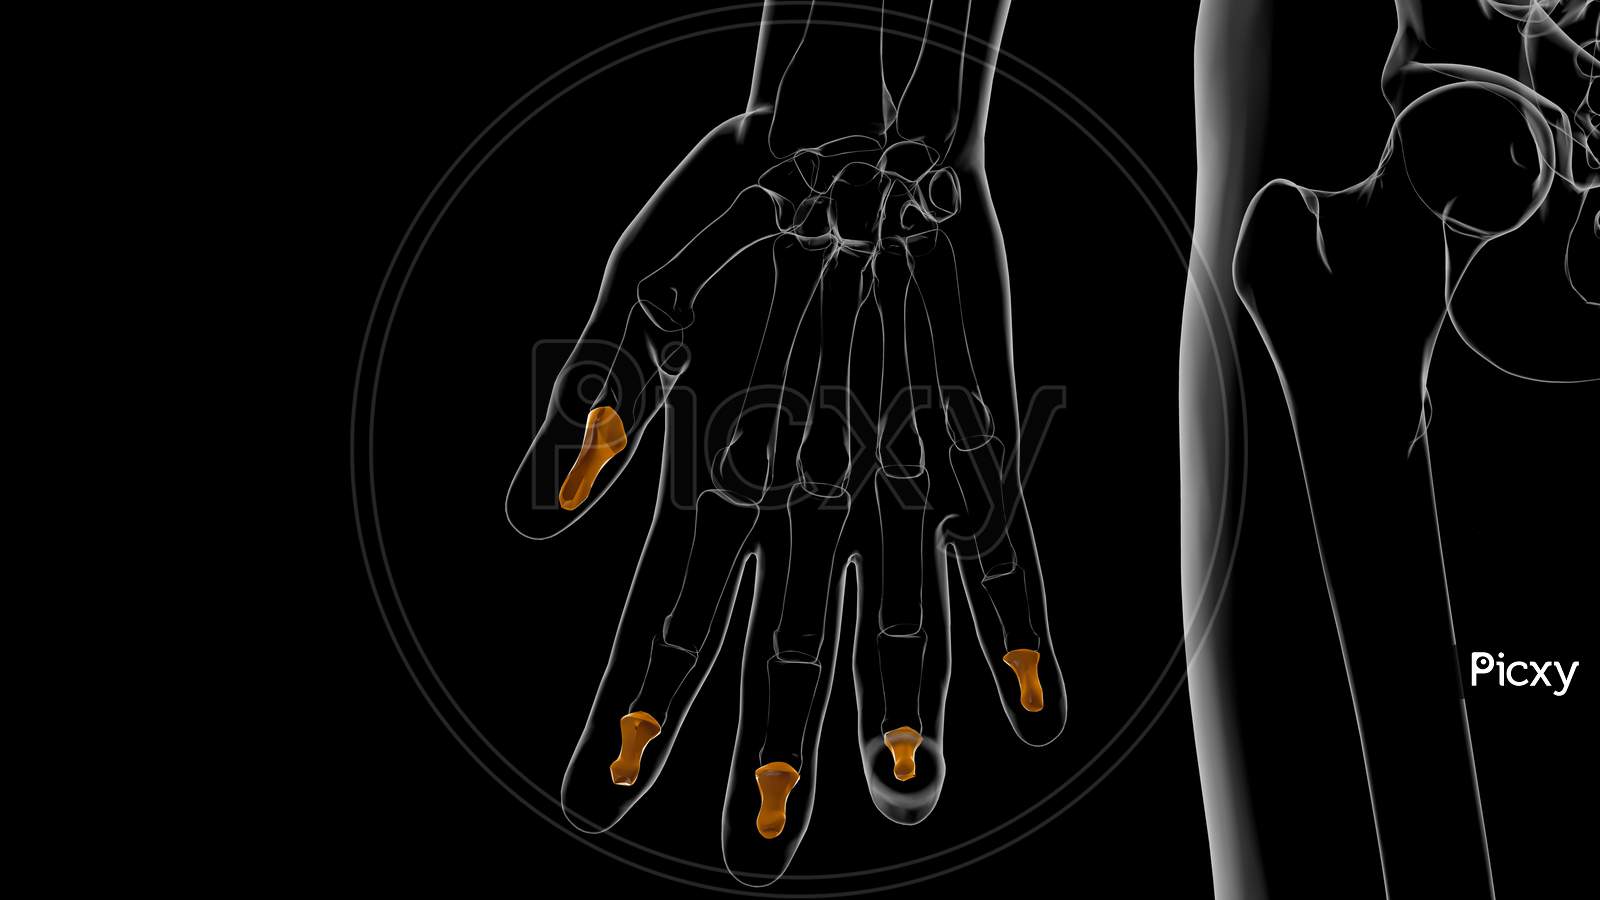 Human Skeleton Hand Distal Phalanges Bone Anatomy For Medical Concept 3D